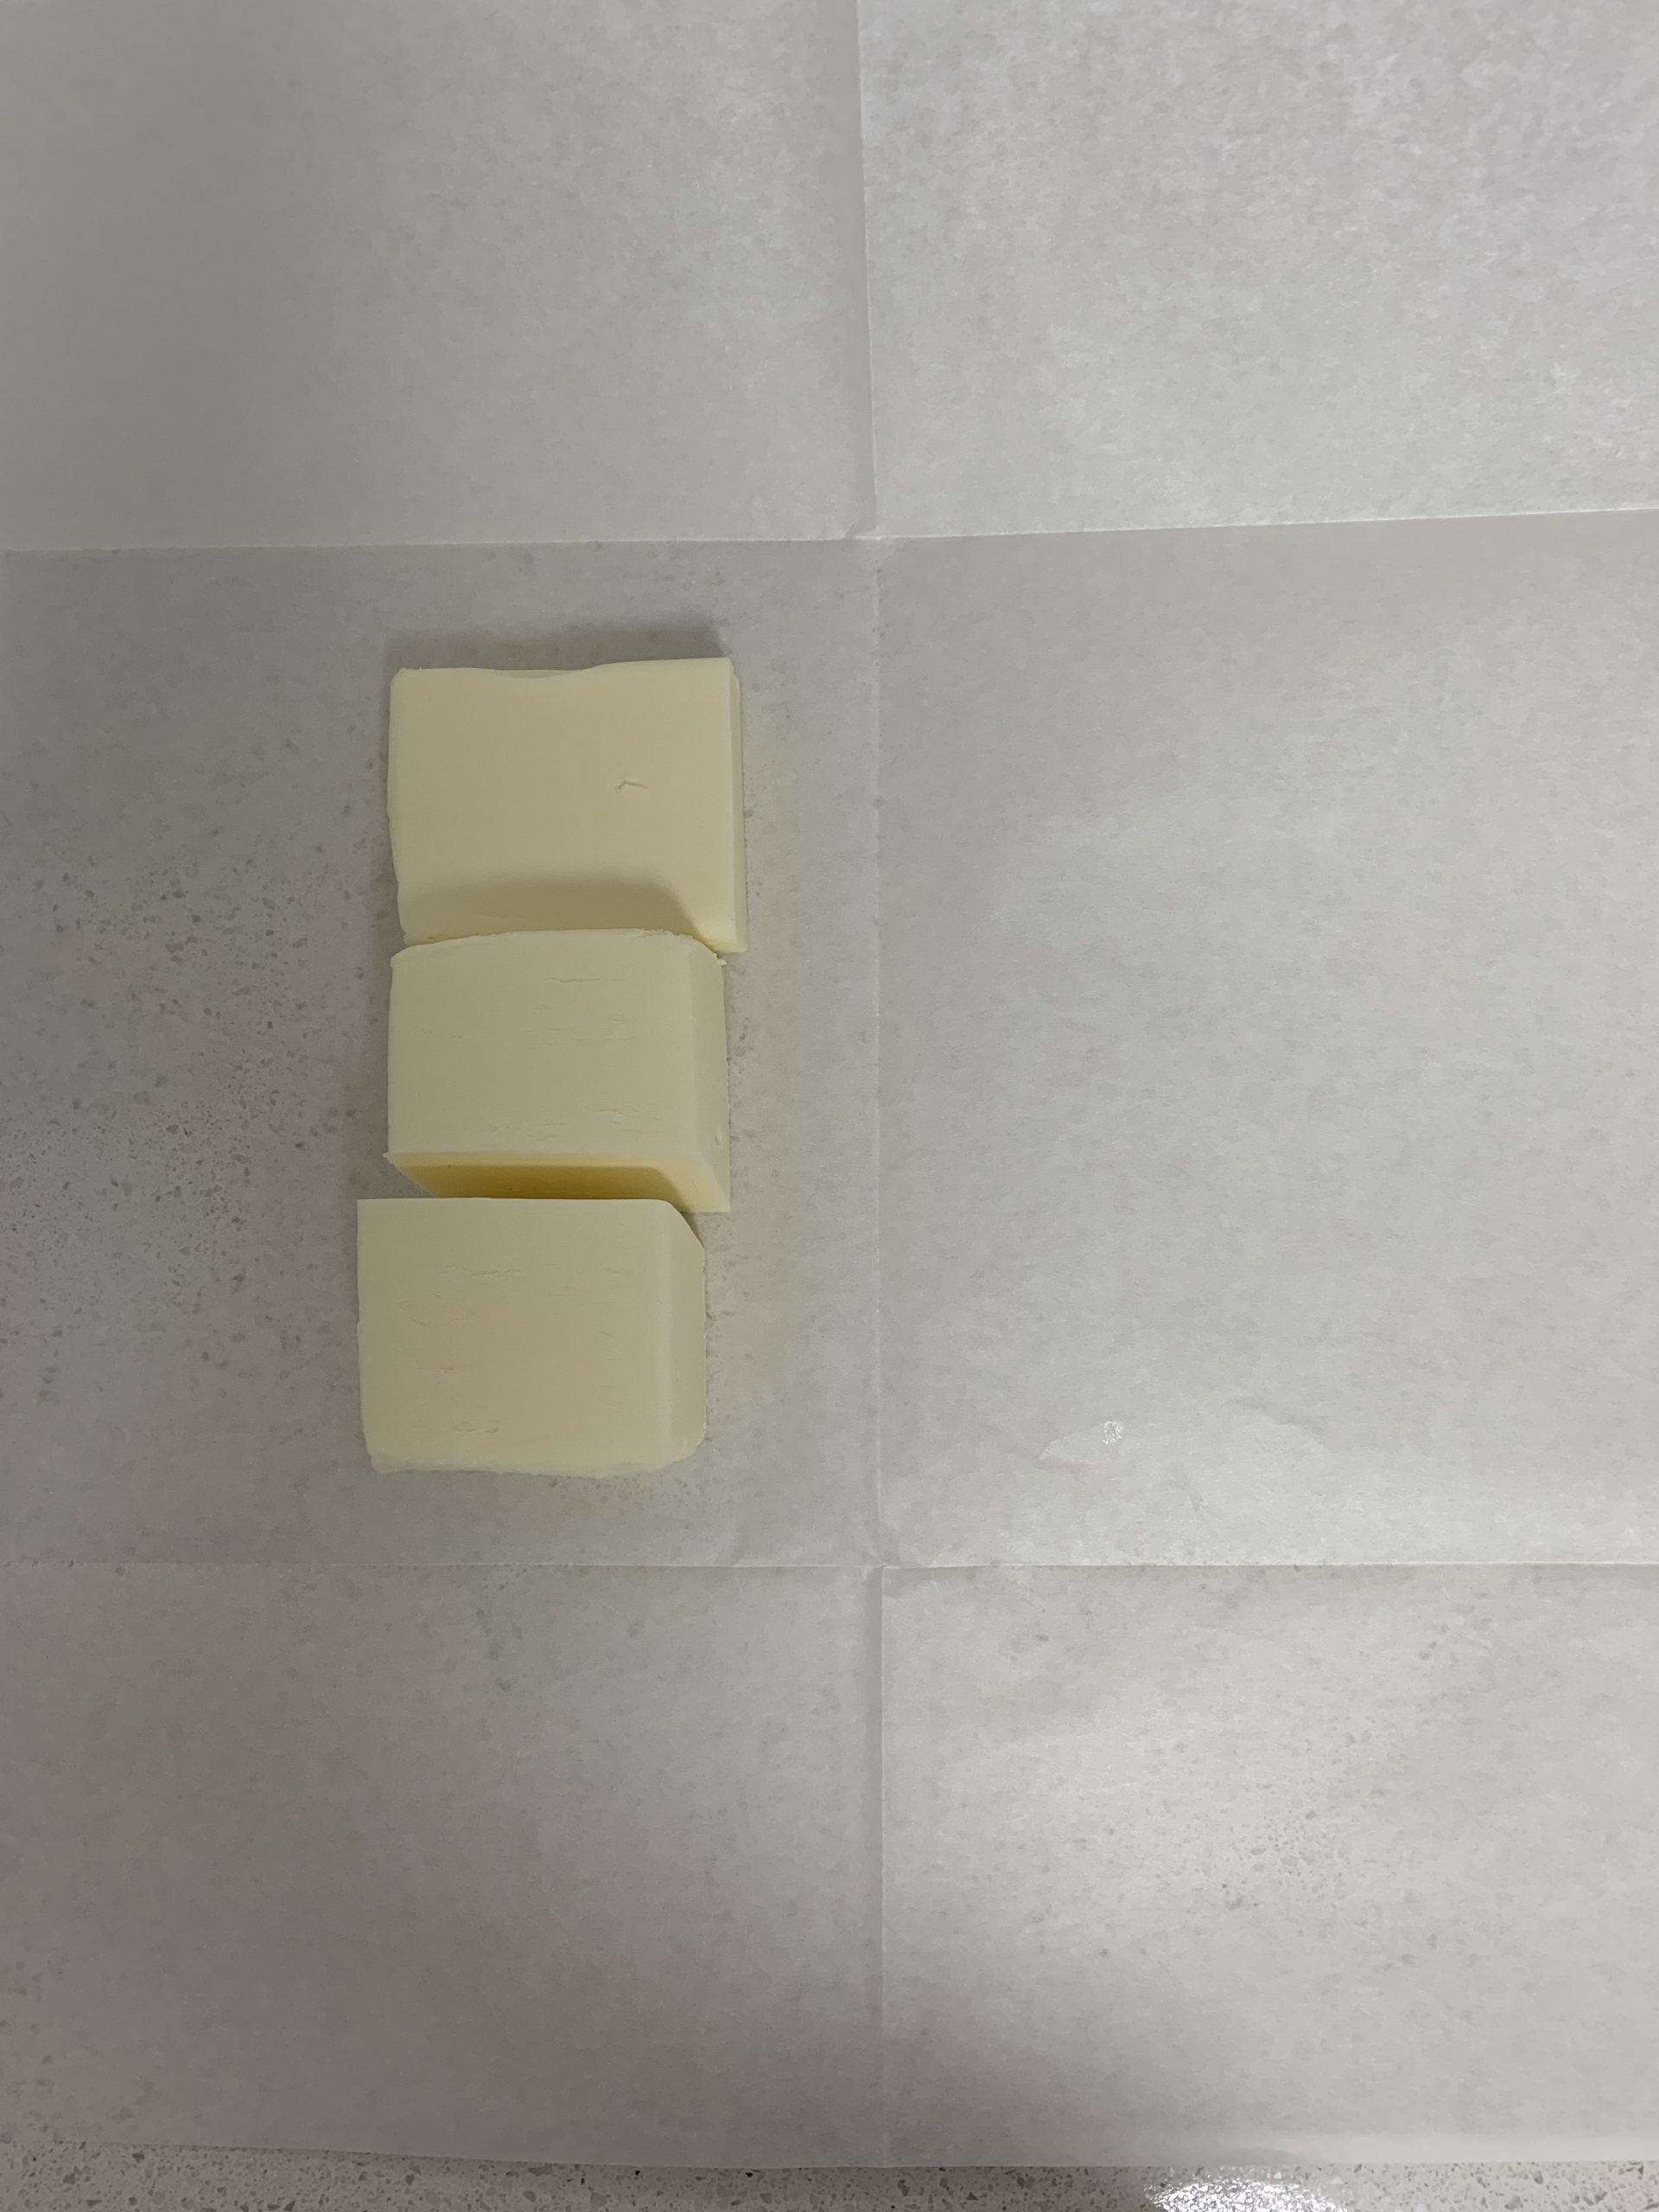 קרואסון חמאה קלאסי - המדריך המלא | צילום: ספיר דהן